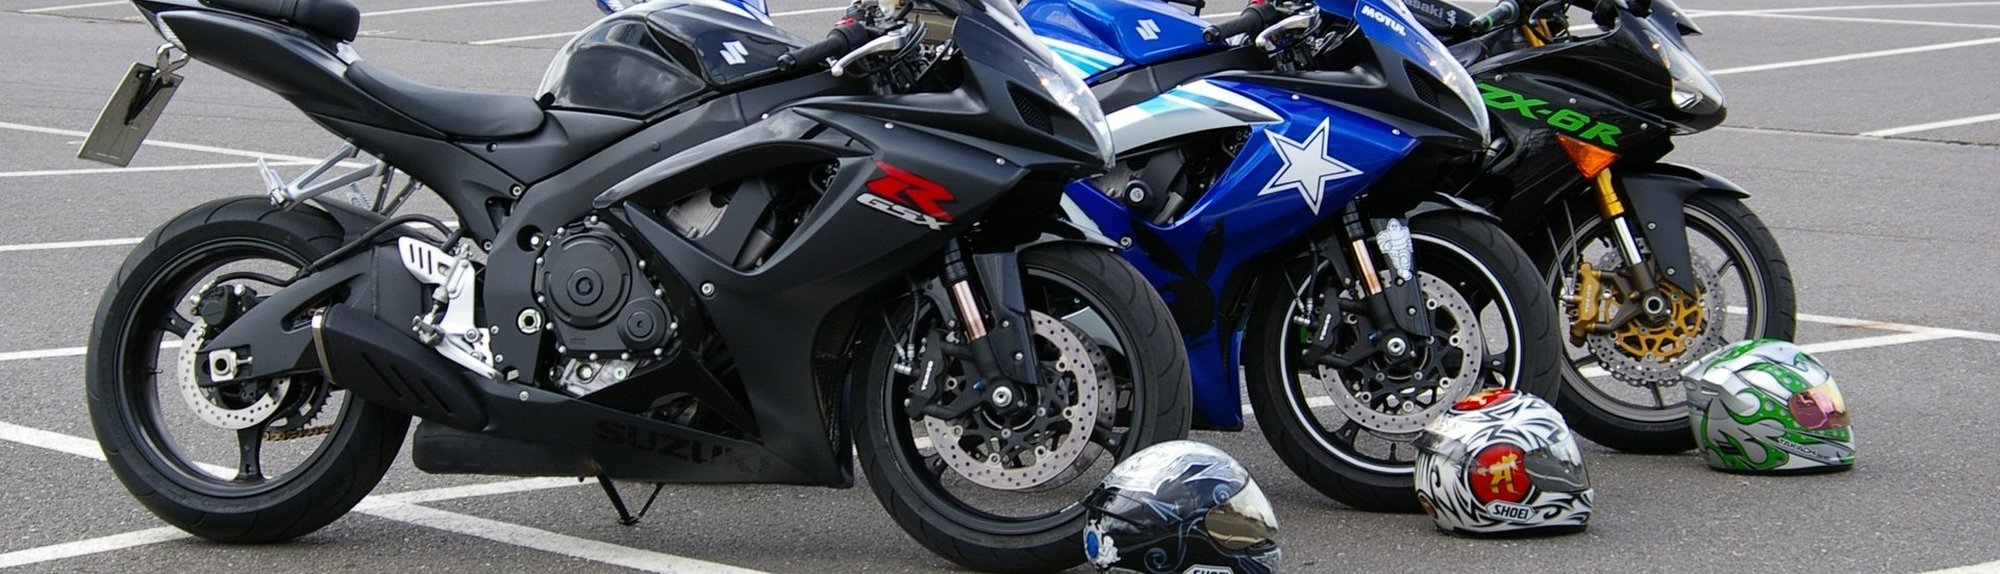 Moto-Fon Motocicletas y Ciclomotores